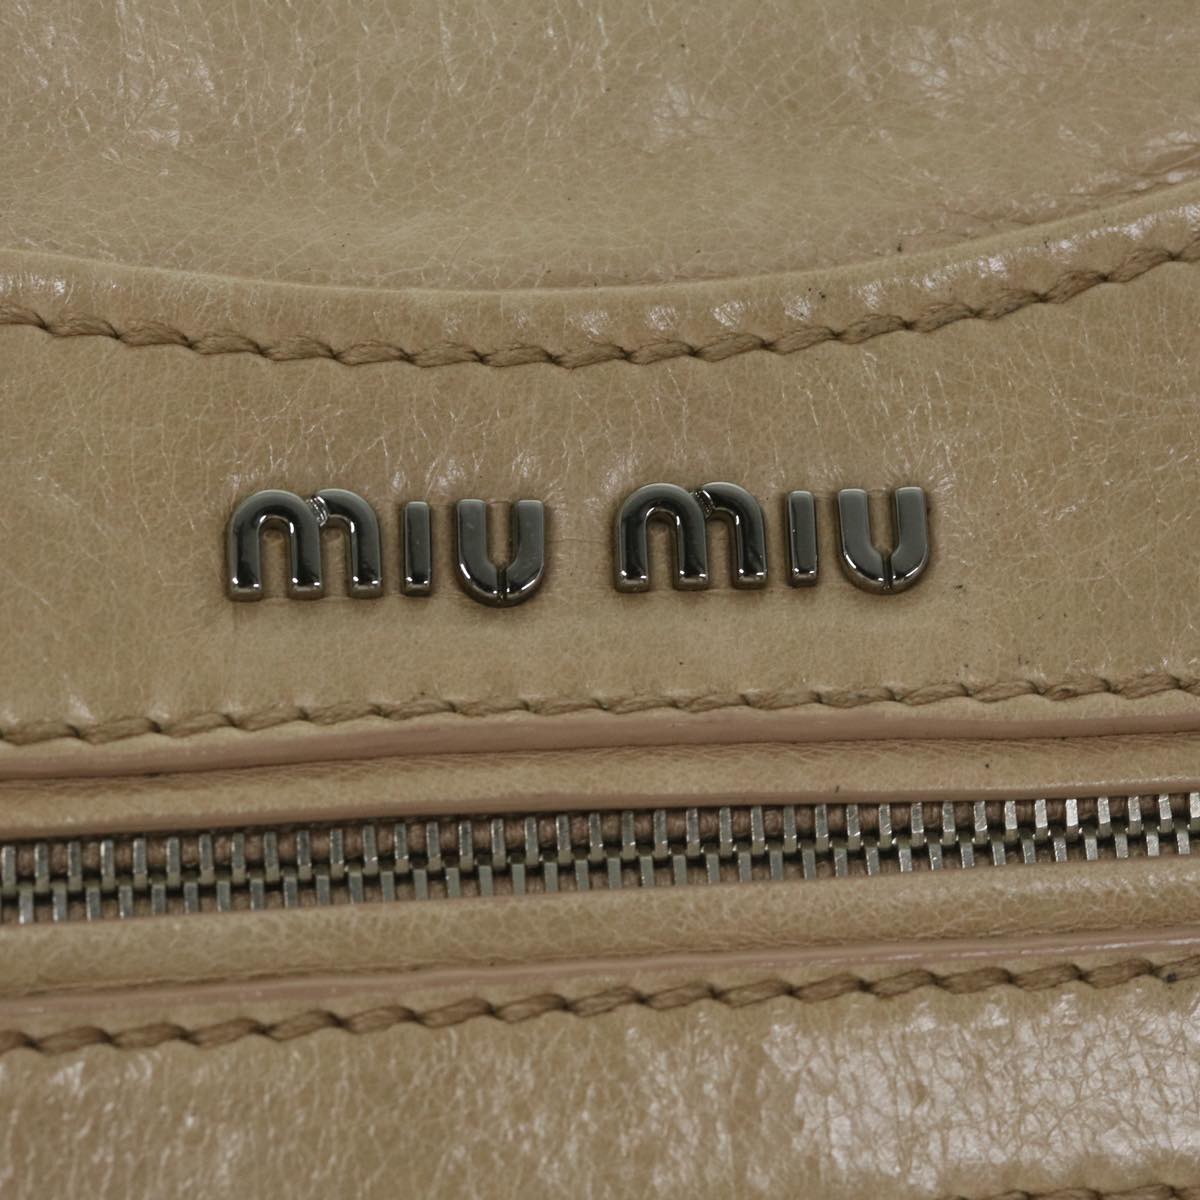 Miu Miu Shoulder Bag Leather Pink Auth bs10536